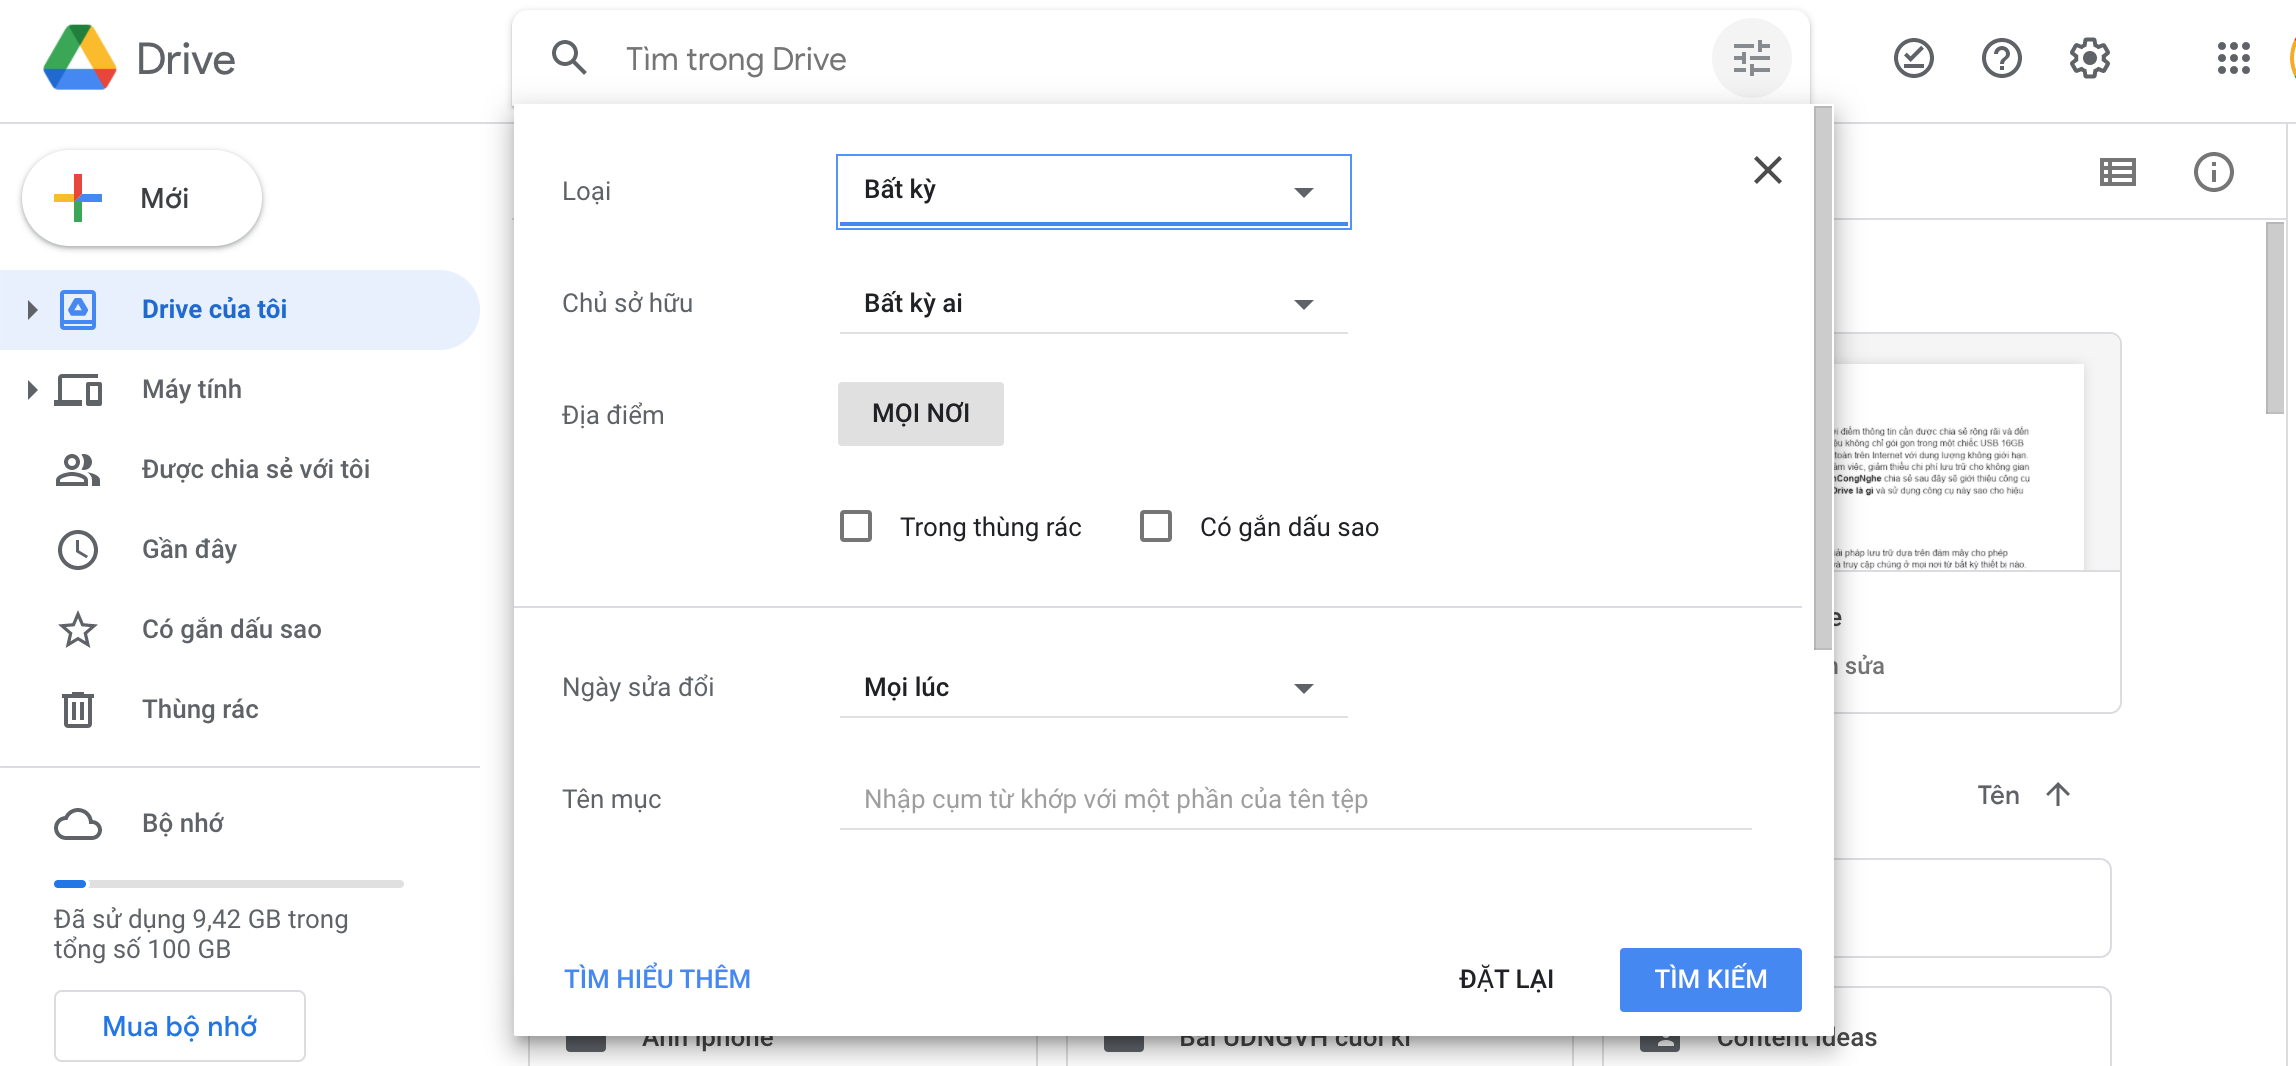 Google Drive là gì? Cách sử dụng Google Drive đơn giản cho 1 người mới bắt đầu 3